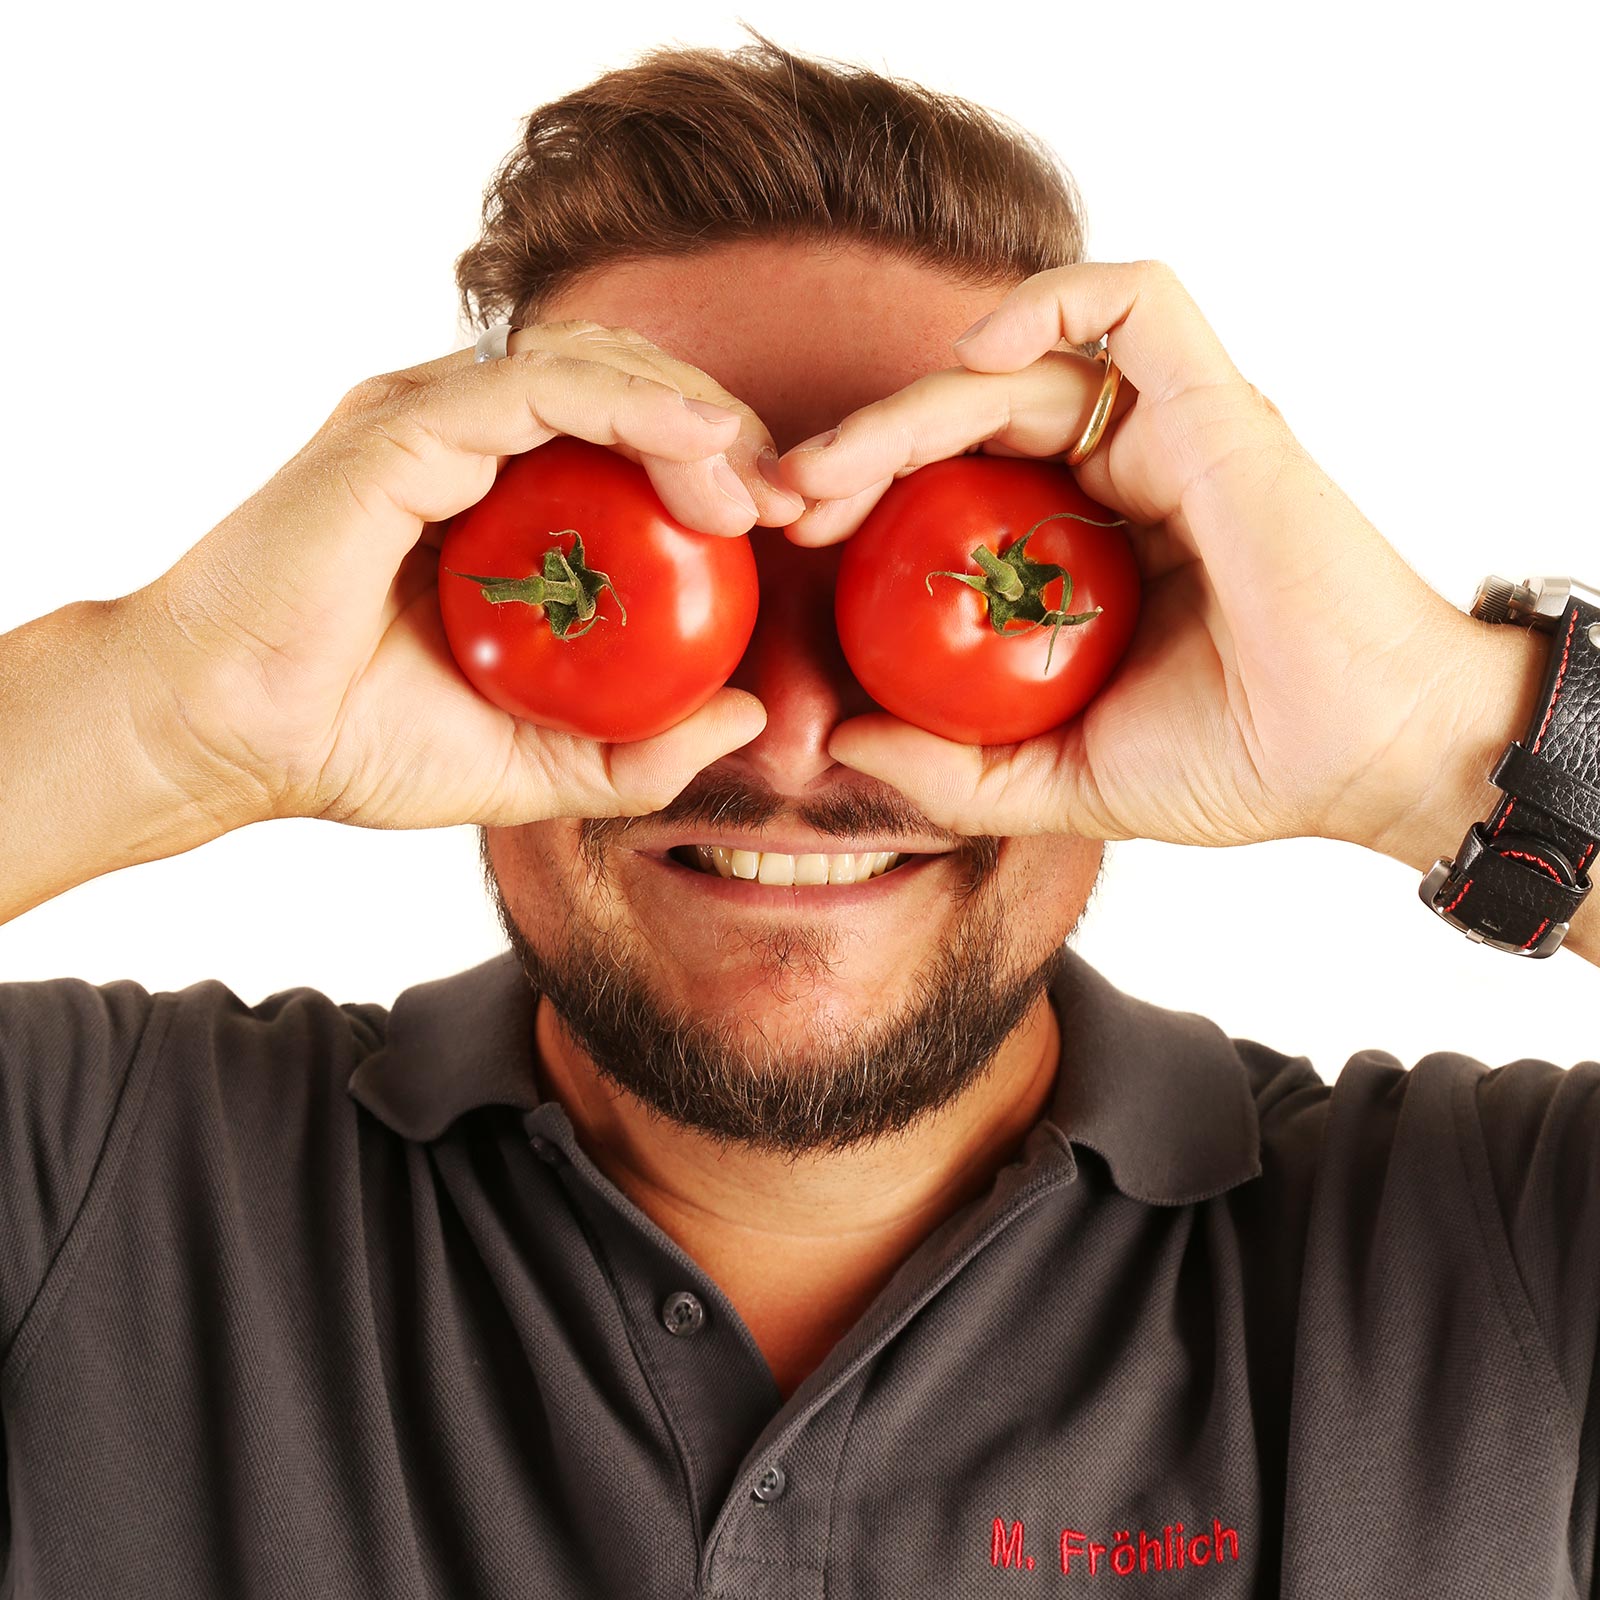 REWE Fröhlich Tomaten auf den Augen Stefan Wiest Glashaus Nürnberg Fotografie Fotostudio Werbeagentur